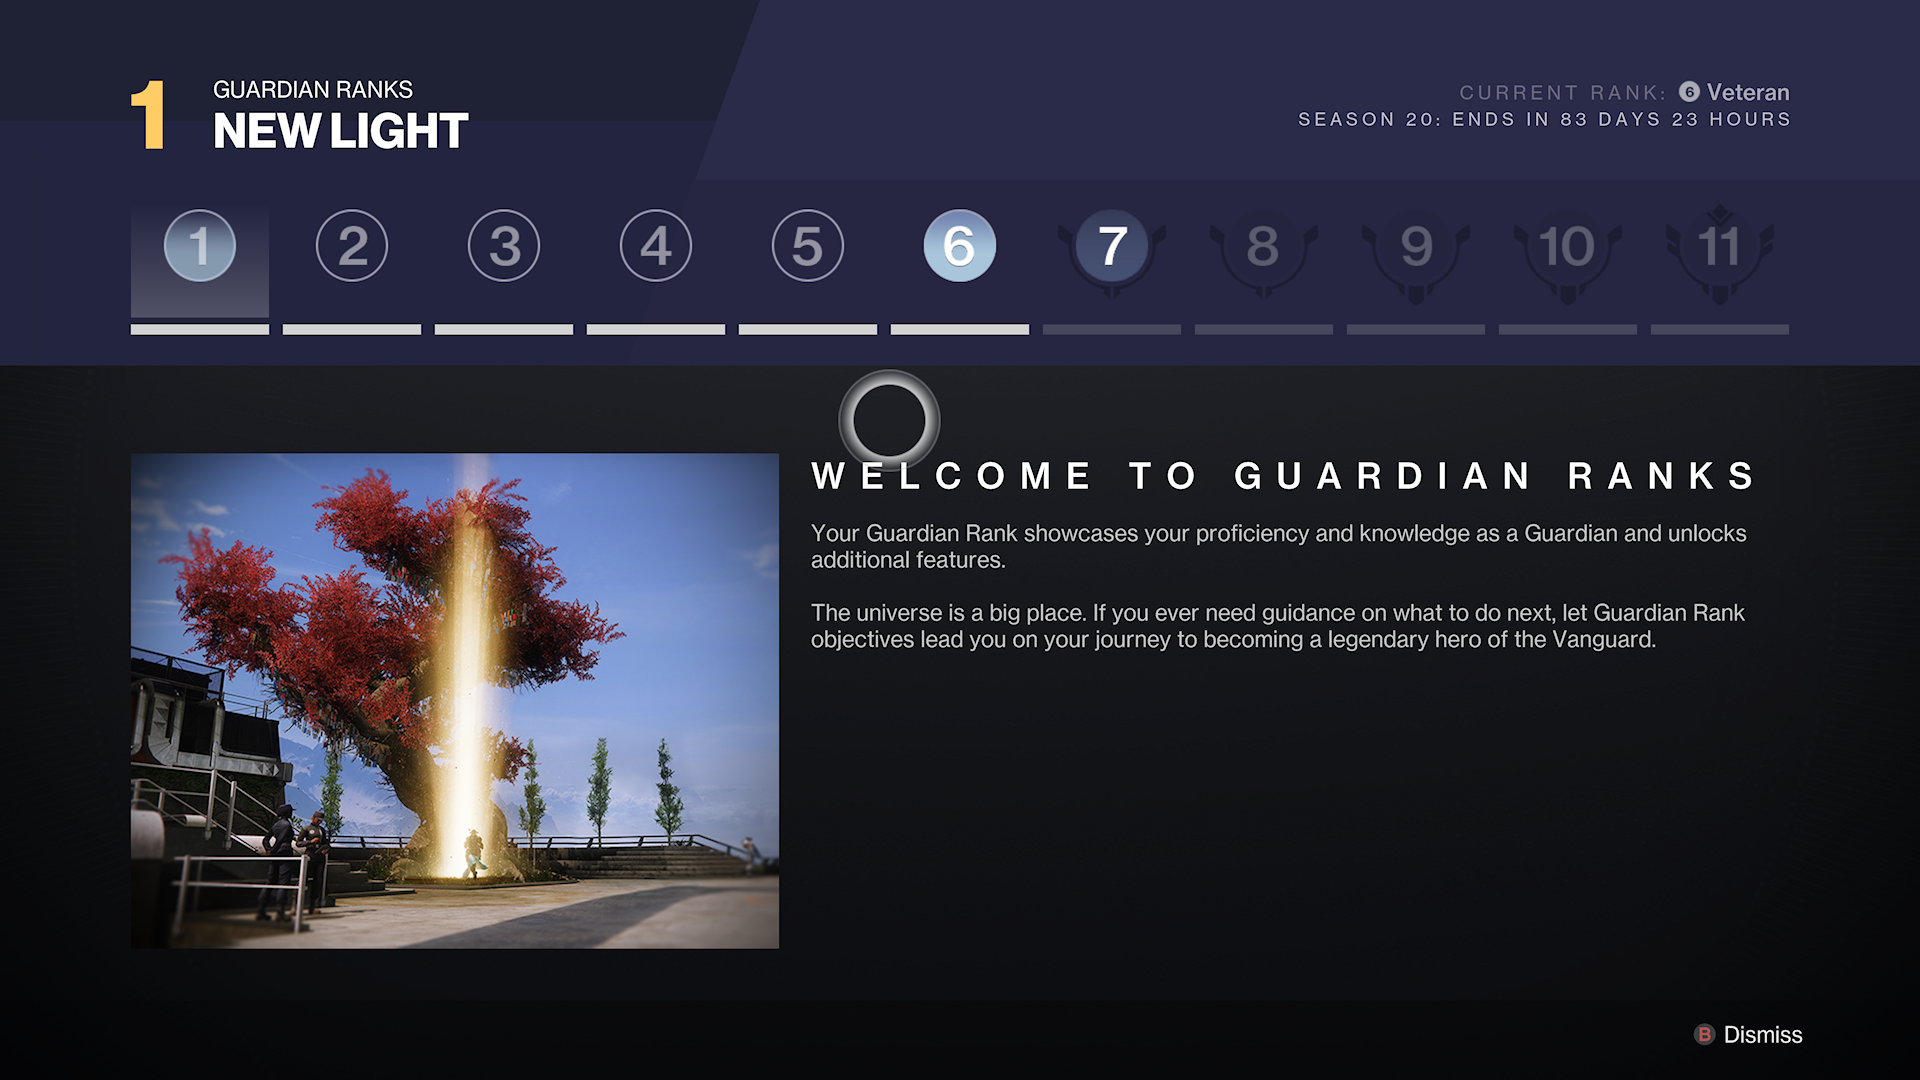 Destiny 2 Lightfall - Guardian Ranks välkomstskärm som visar 11 nivåer